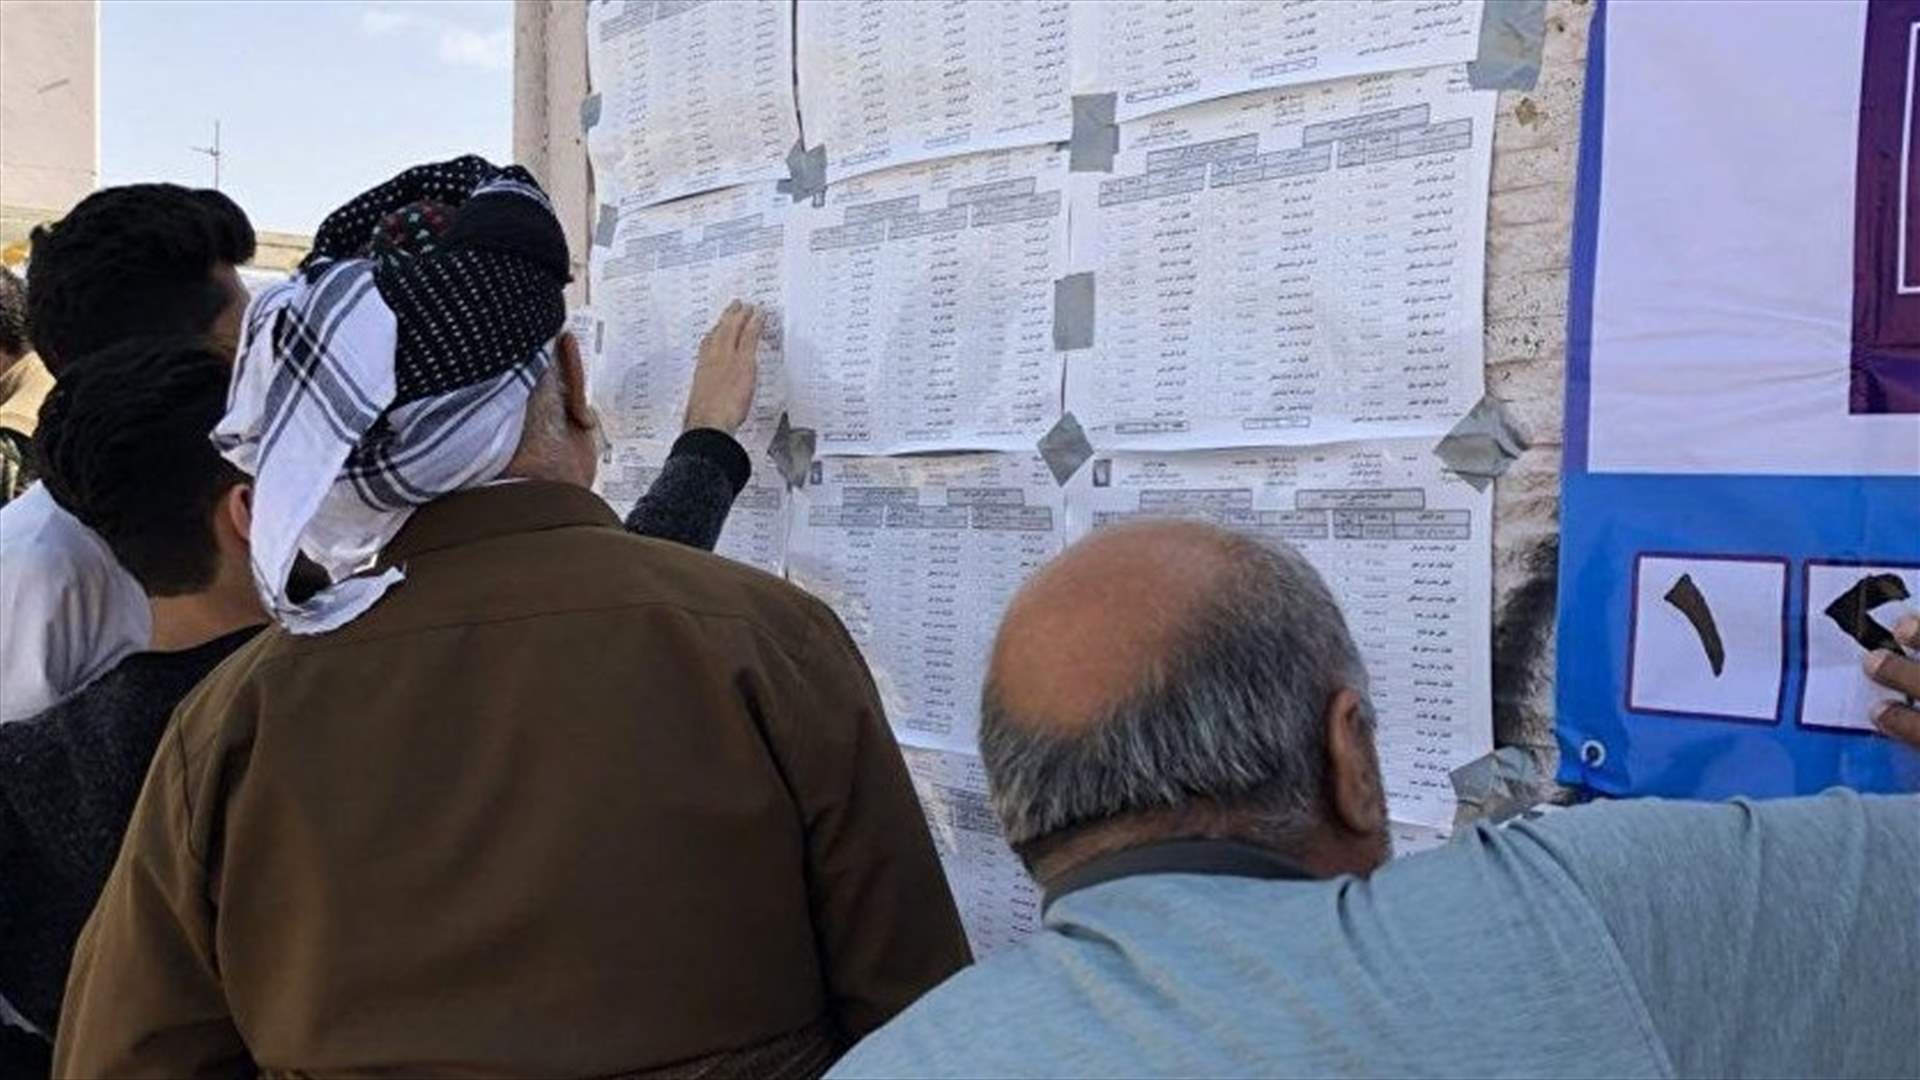 العراق سيعيد النظر في عملية التصويت